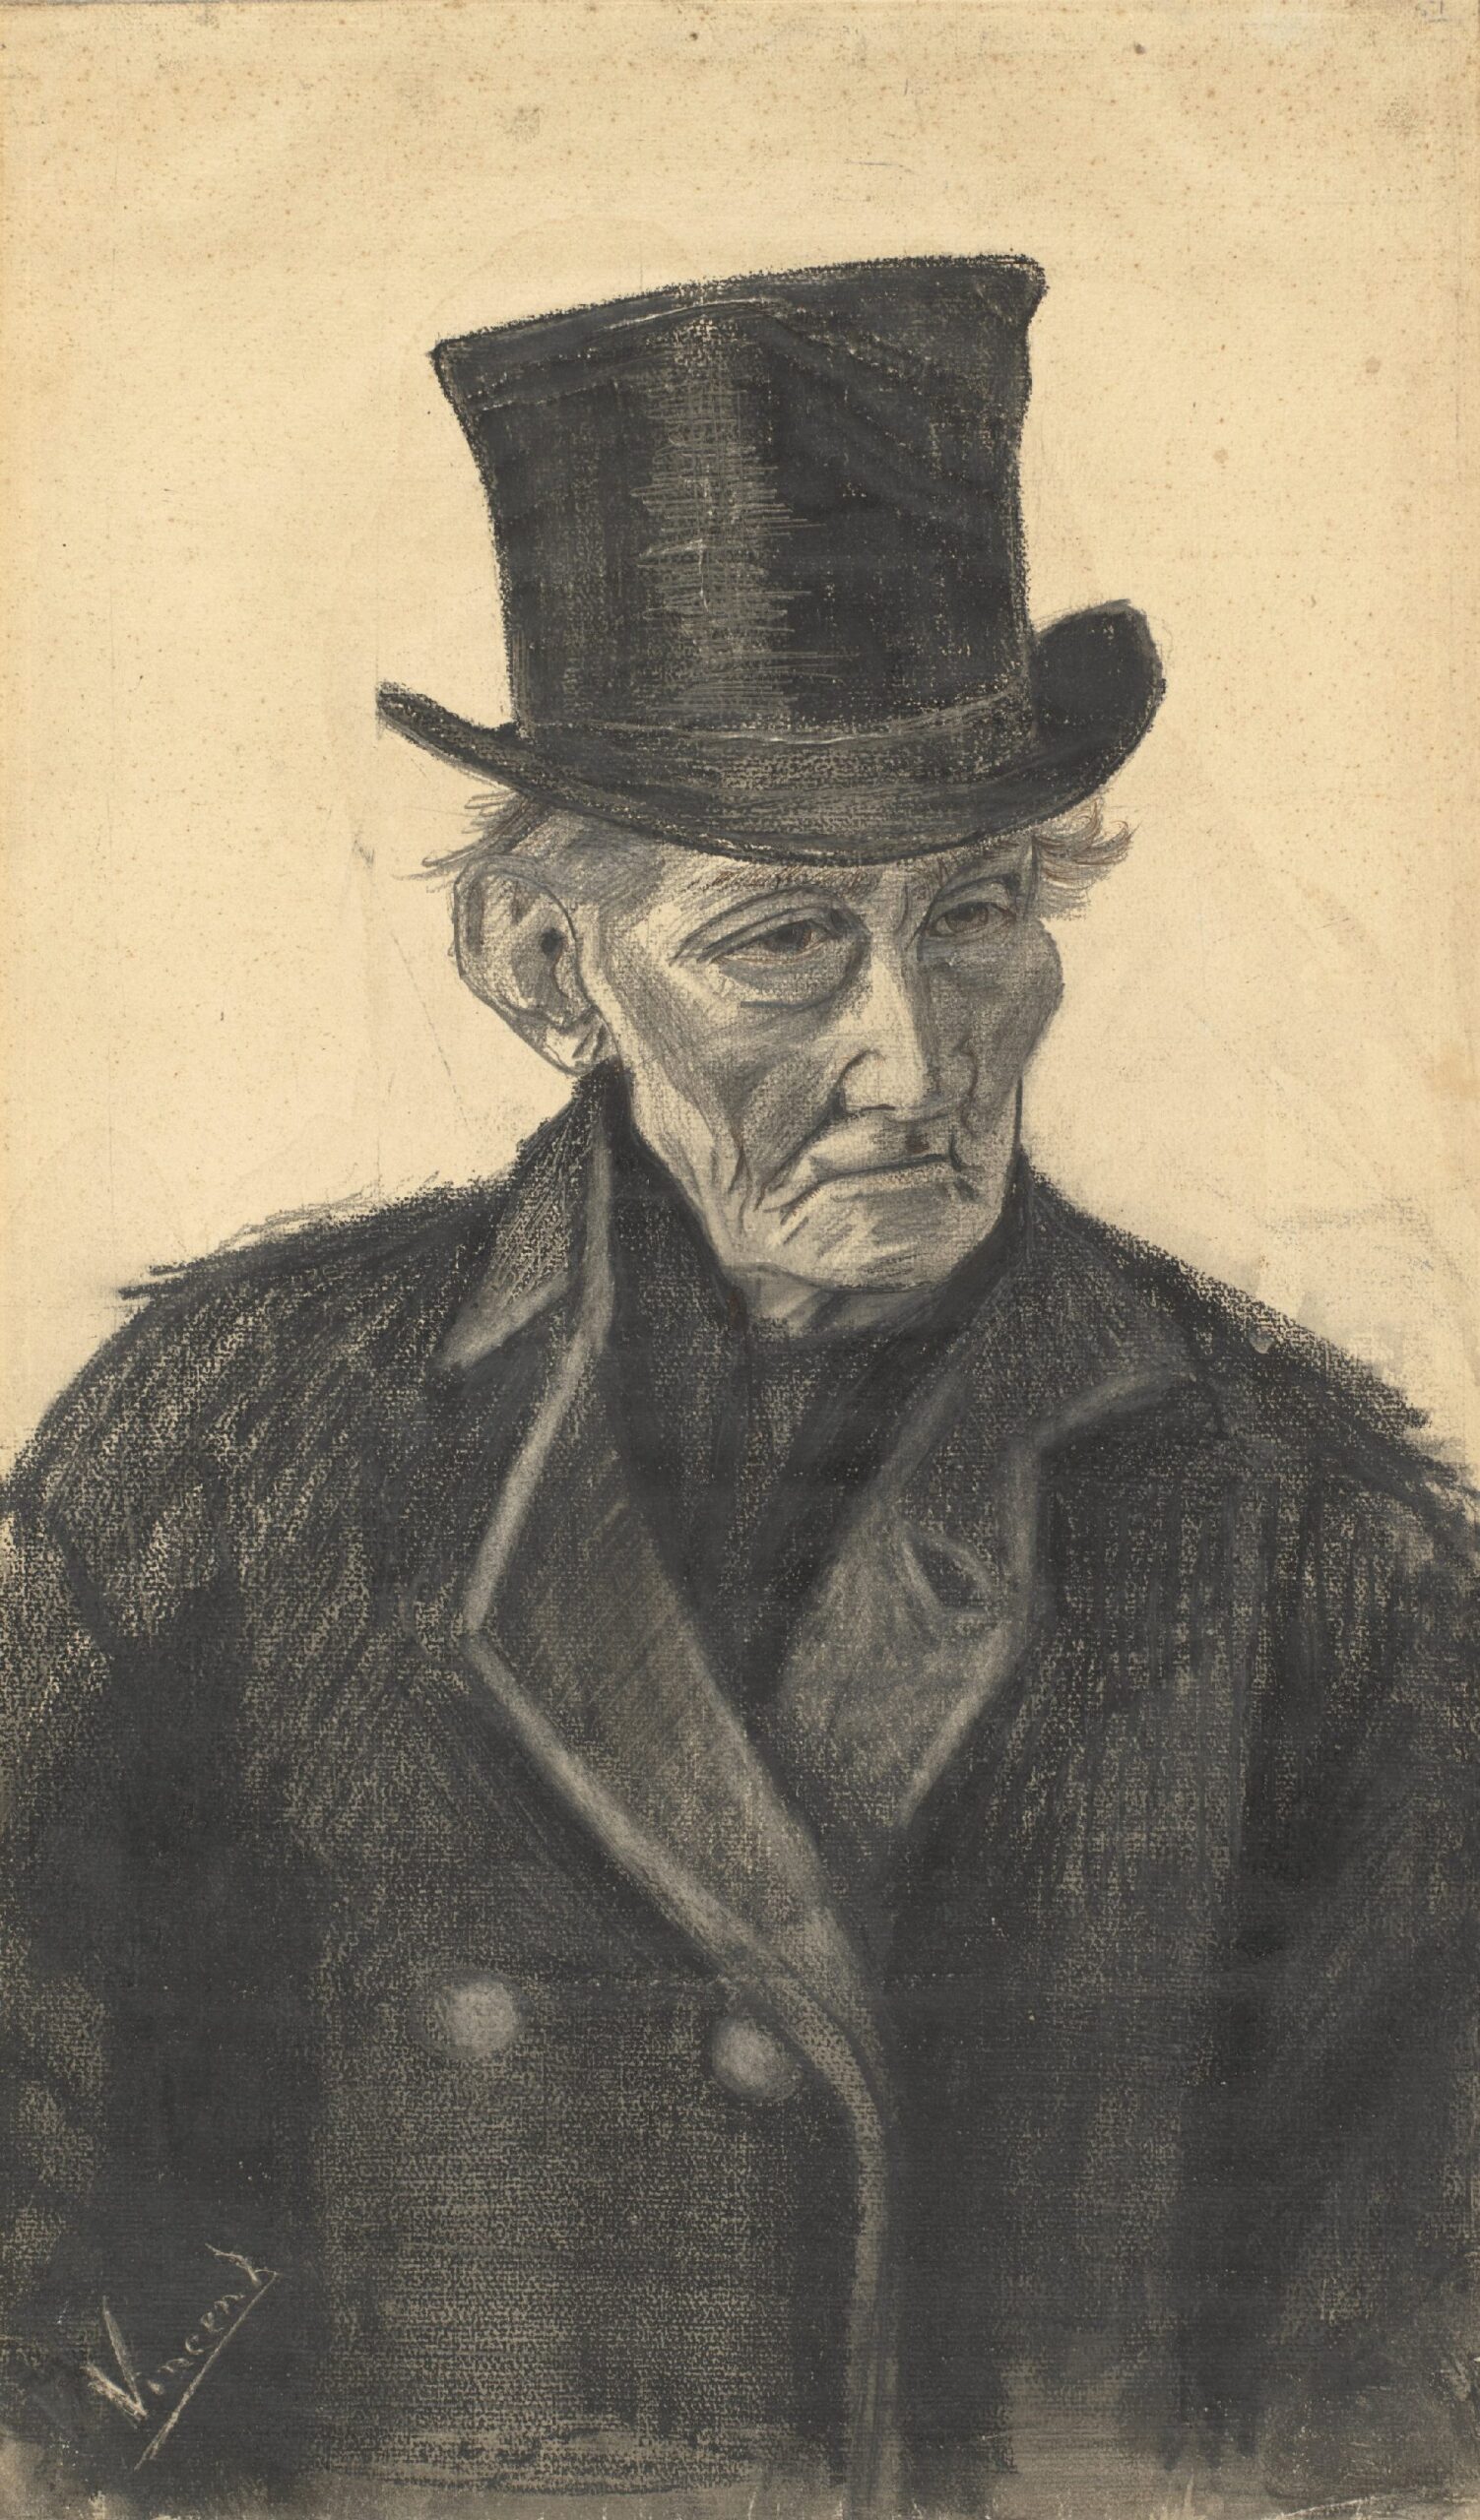 Oude man met hoge hoed Vincent van Gogh (1853 - 1890), Den Haag, december 1882-januari 1883